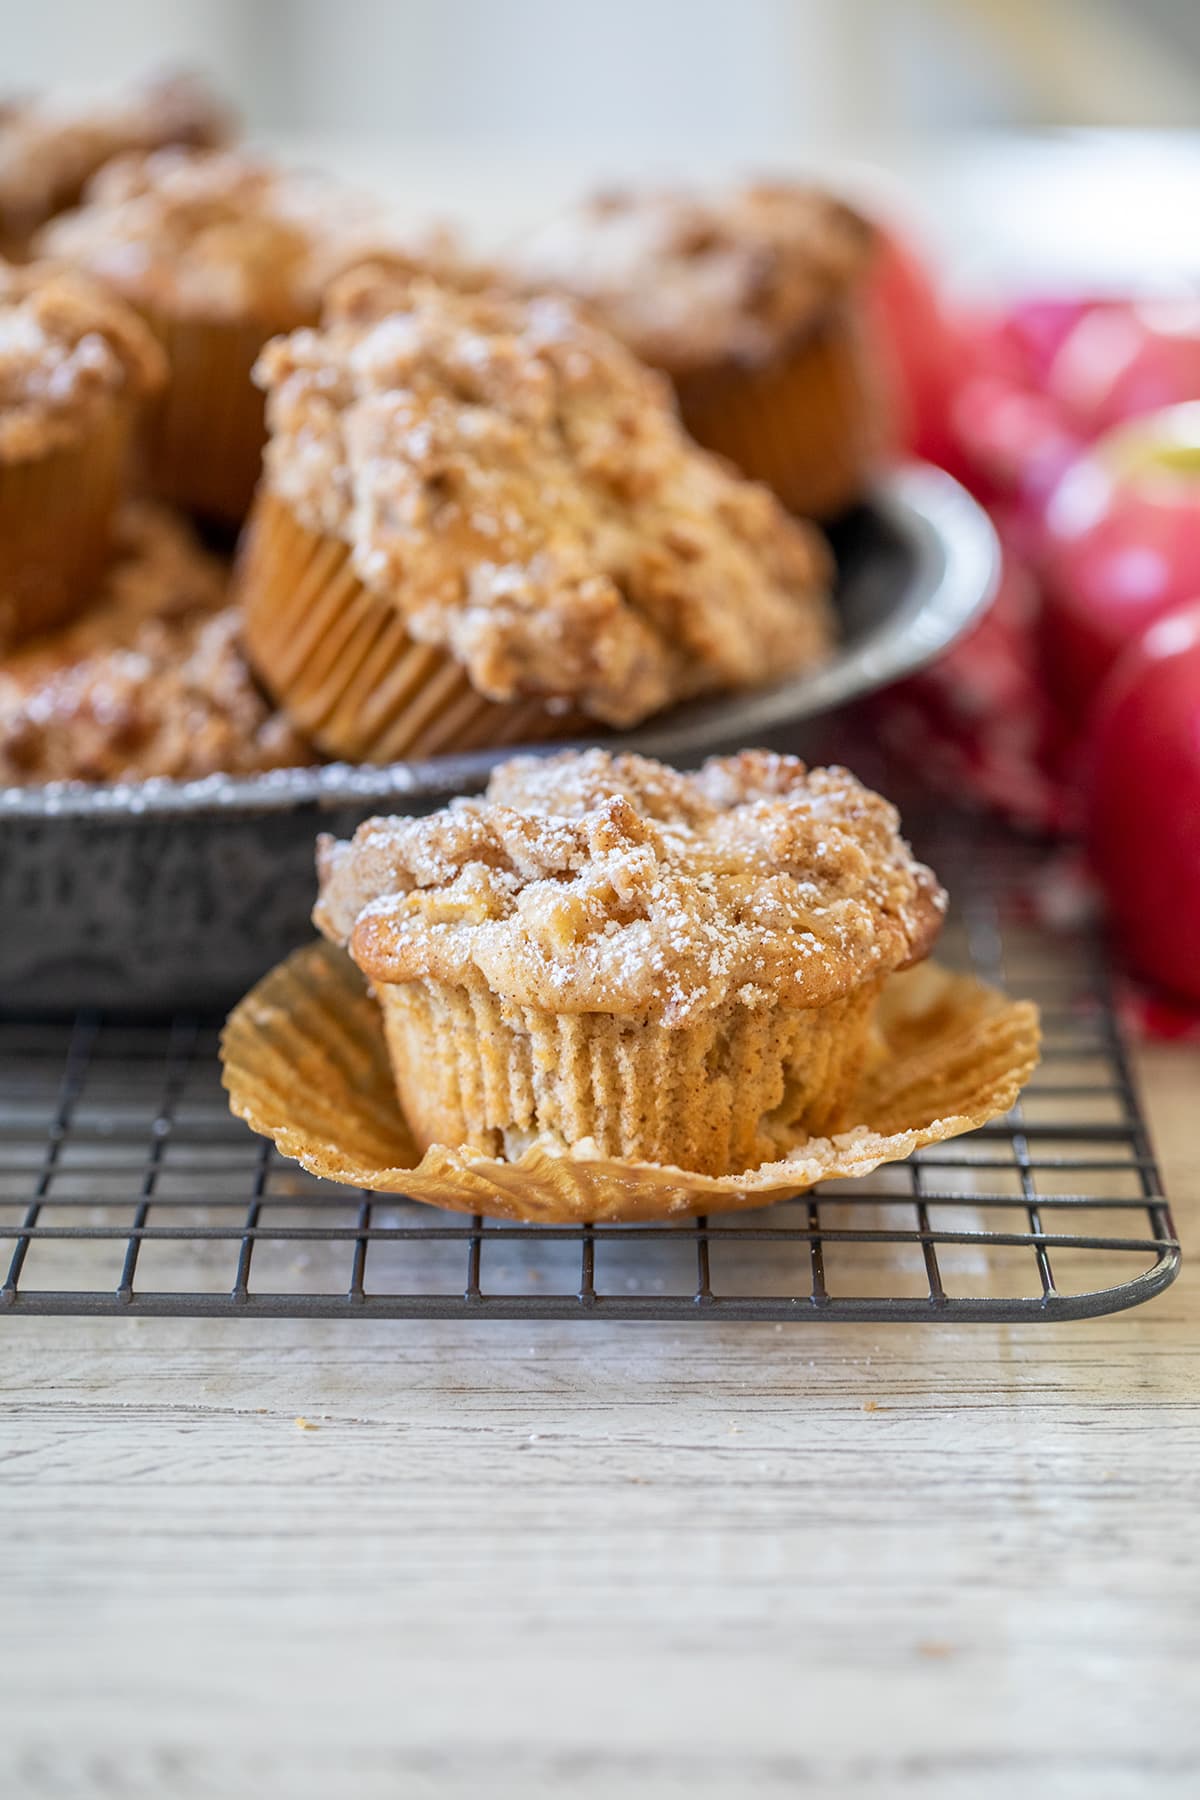 Apple Cinnamon Streusel Muffins